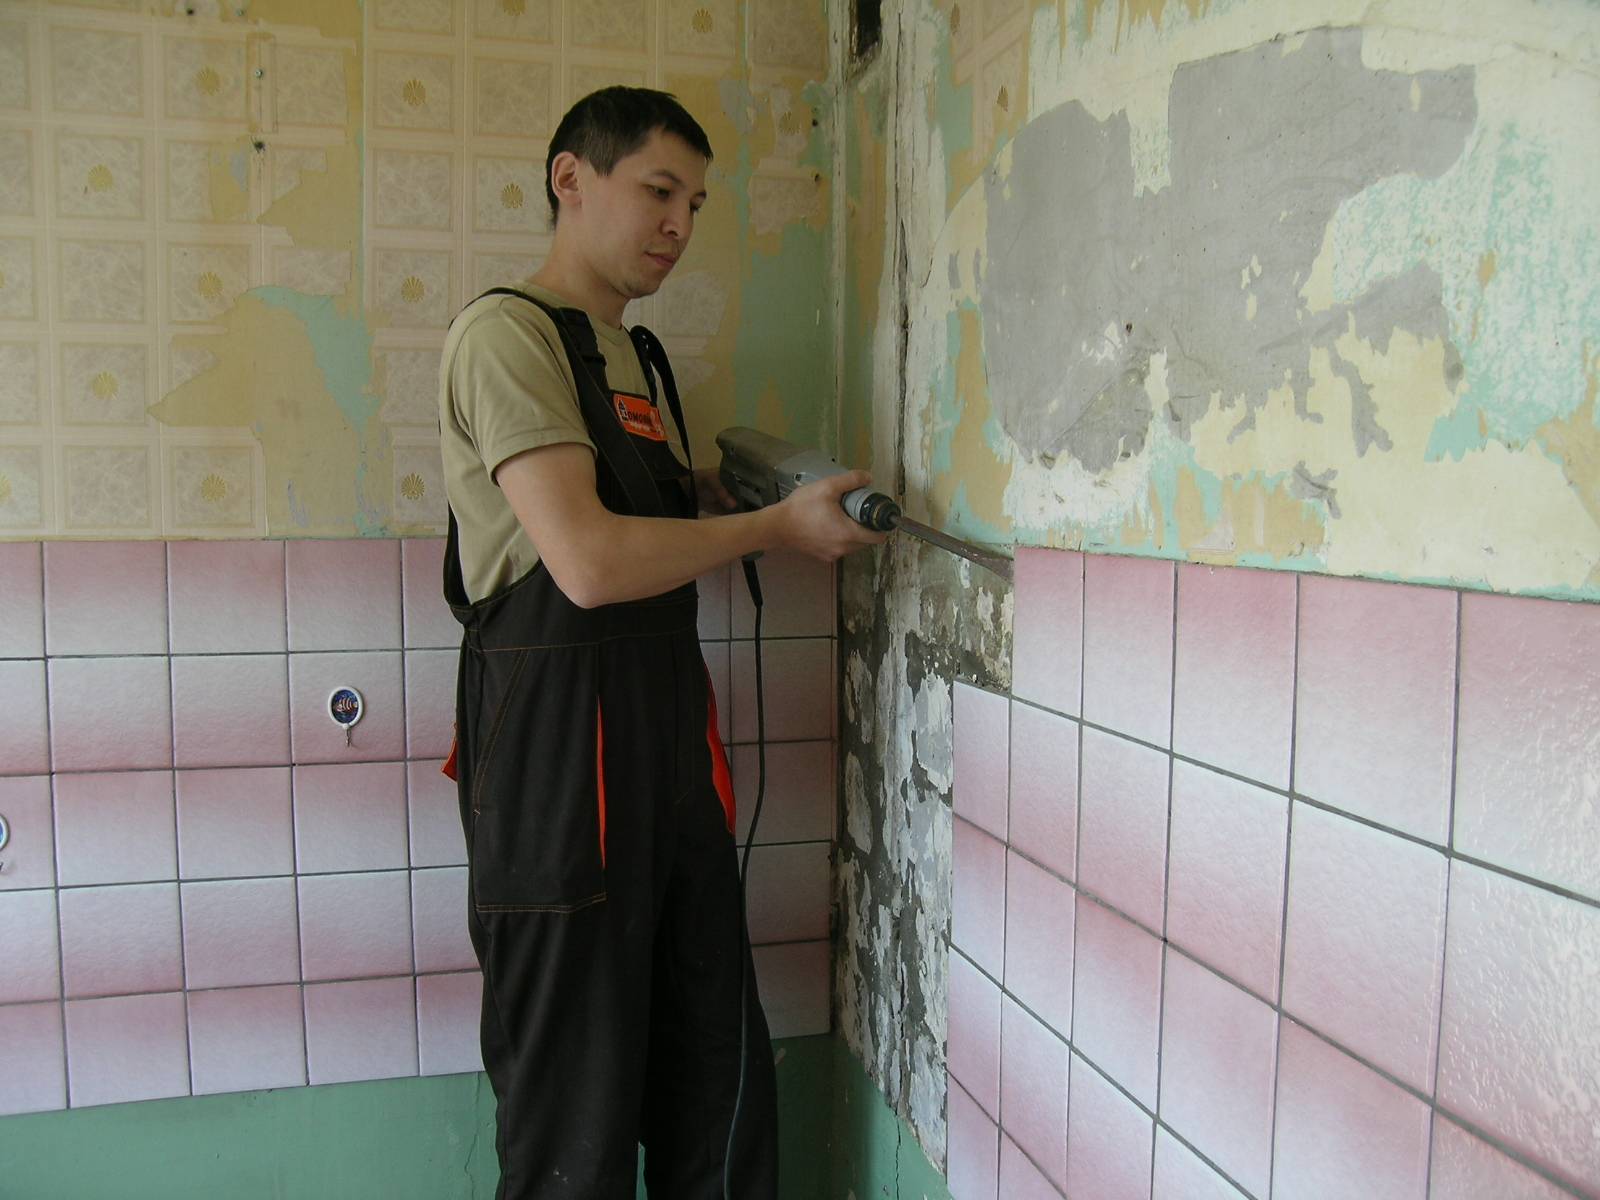 Подготовка стен в ванной под плитку: как подготовить к укладке бетонные или кирпичные стены своими руками, допустимые неровности в туалете и стоит ли штукатурить перед поклейкой